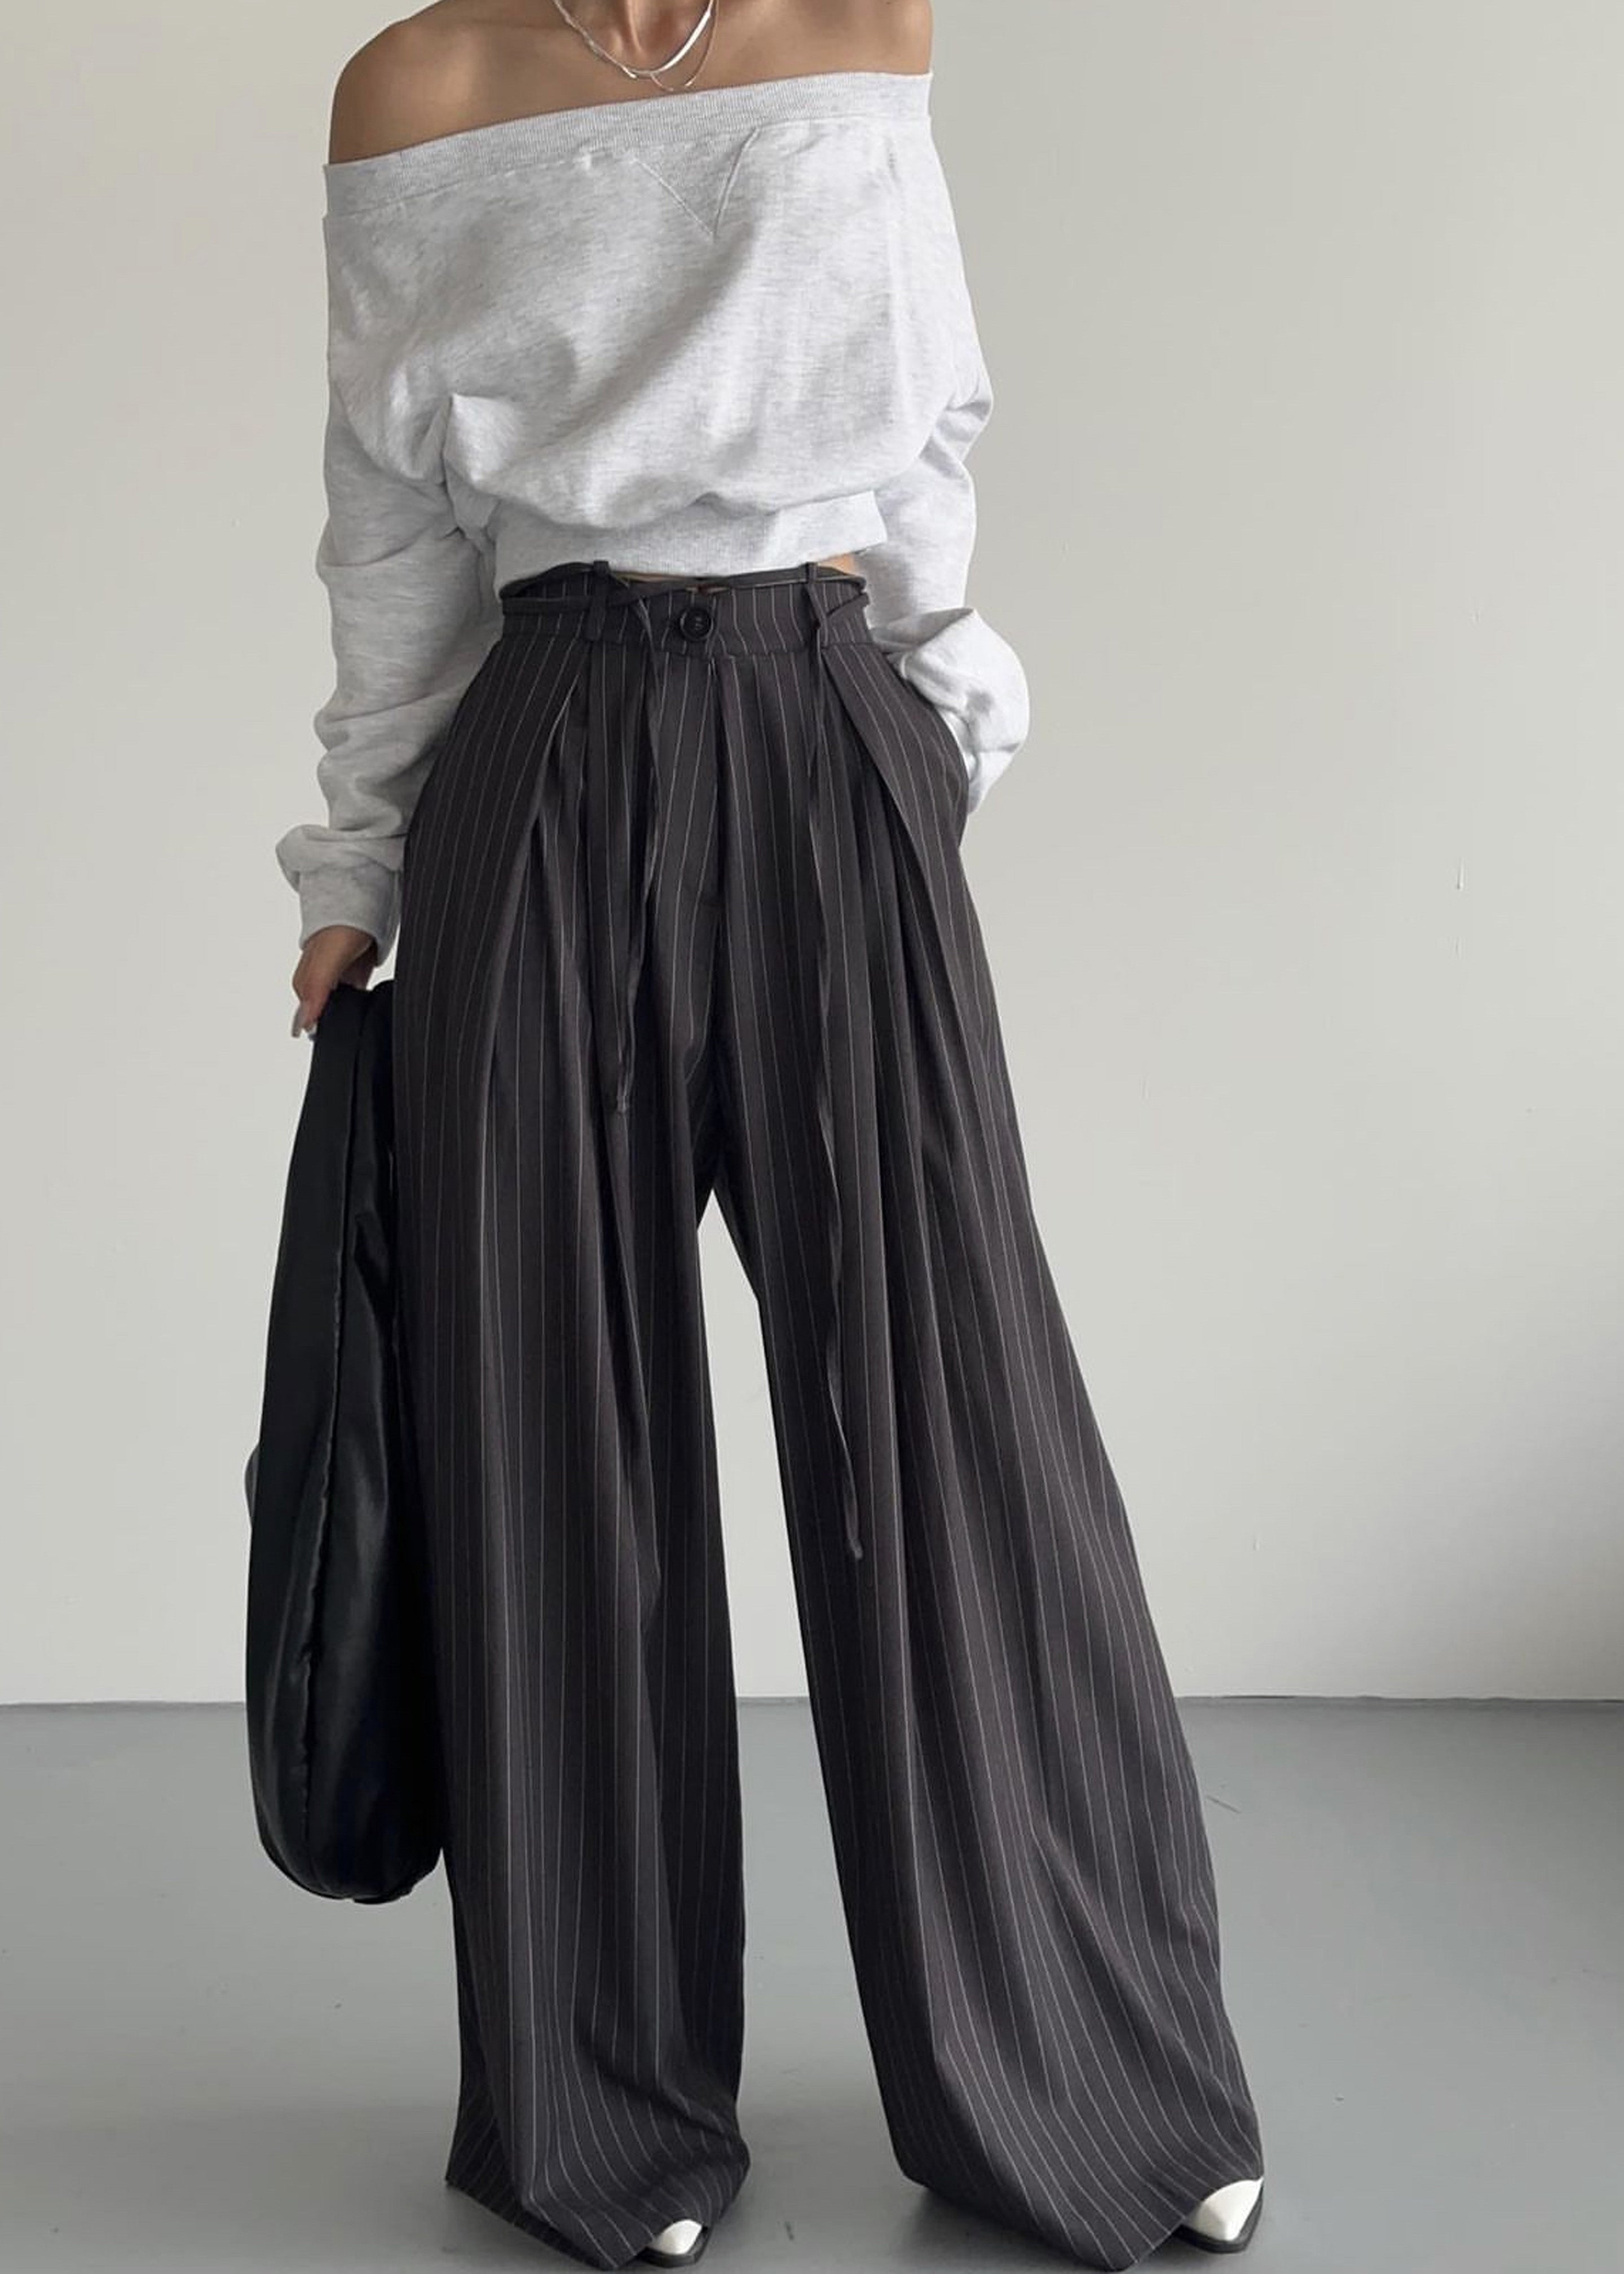 Striped Pants, Pinstripe Pants